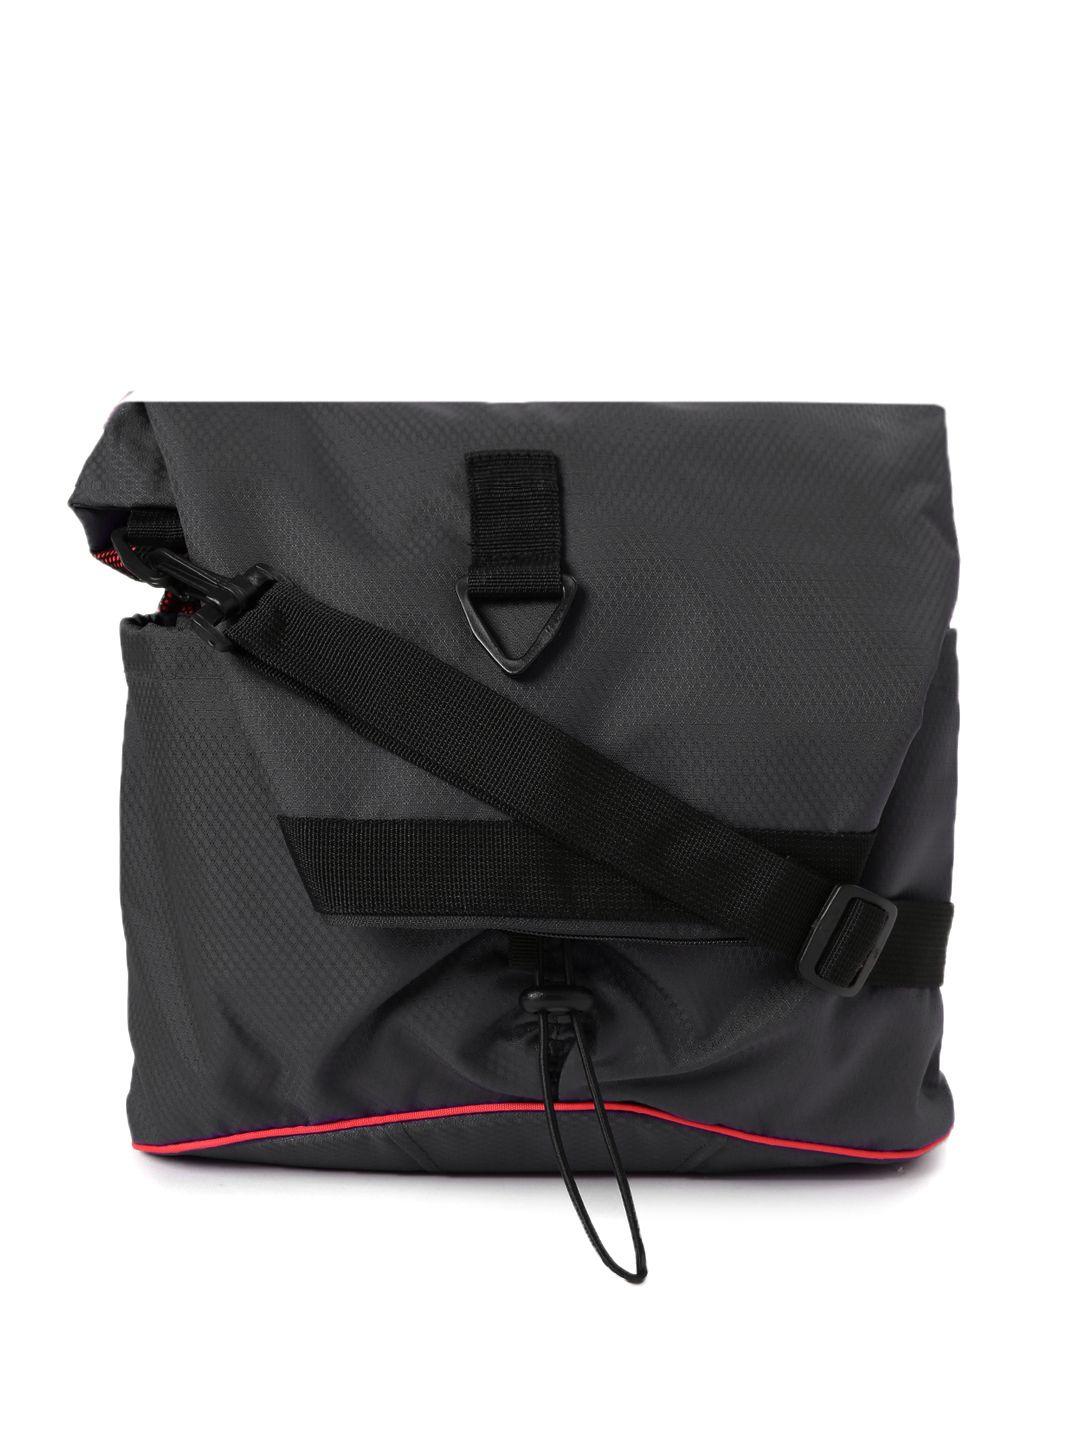 fastrack black sling bag